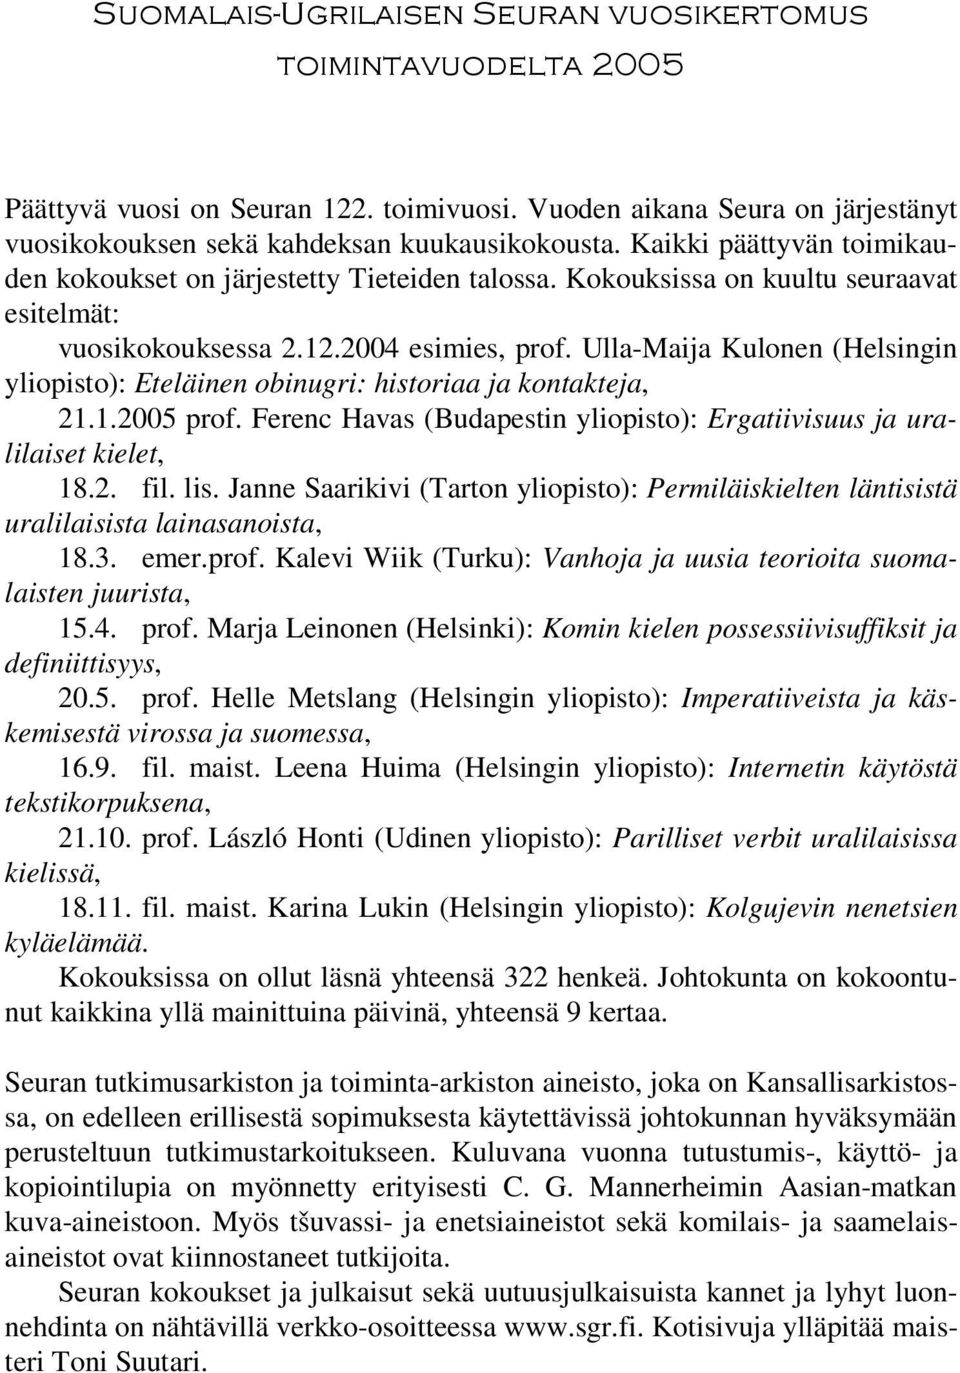 Ulla-Maija Kulonen (Helsingin yliopisto): Eteläinen obinugri: historiaa ja kontakteja, 21.1.2005 prof. Ferenc Havas (Budapestin yliopisto): Ergatiivisuus ja uralilaiset kielet, 18.2. fil. lis.